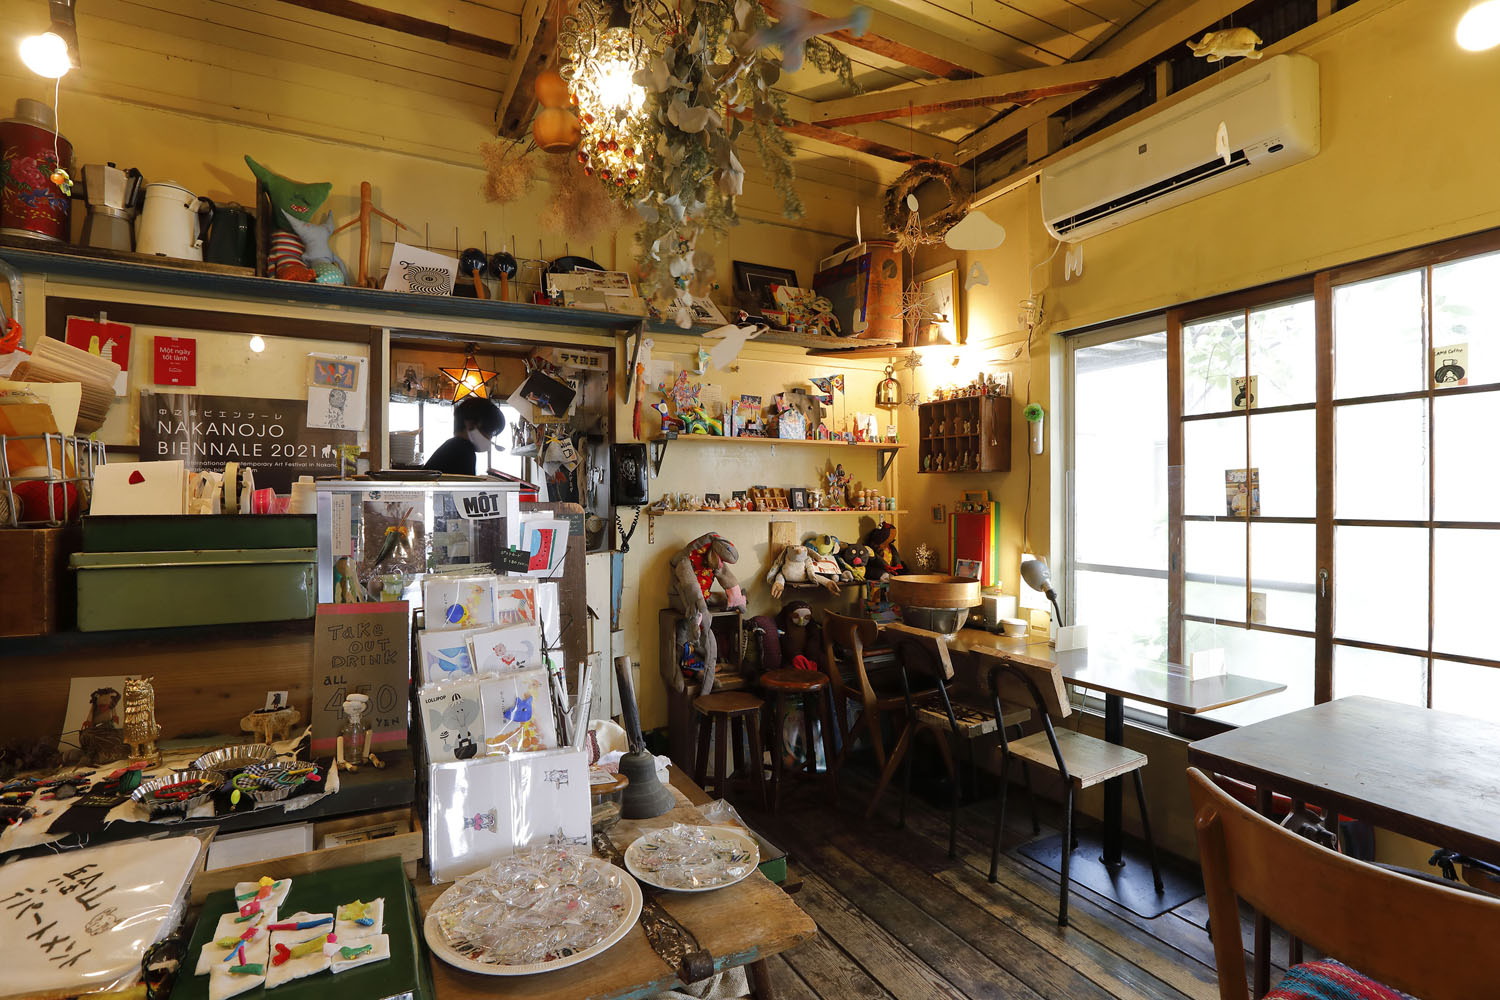 茅ケ崎界隈に住むアーティストたちの独創的な作品が所狭しと並ぶ店内の、カオス感がたまらない。